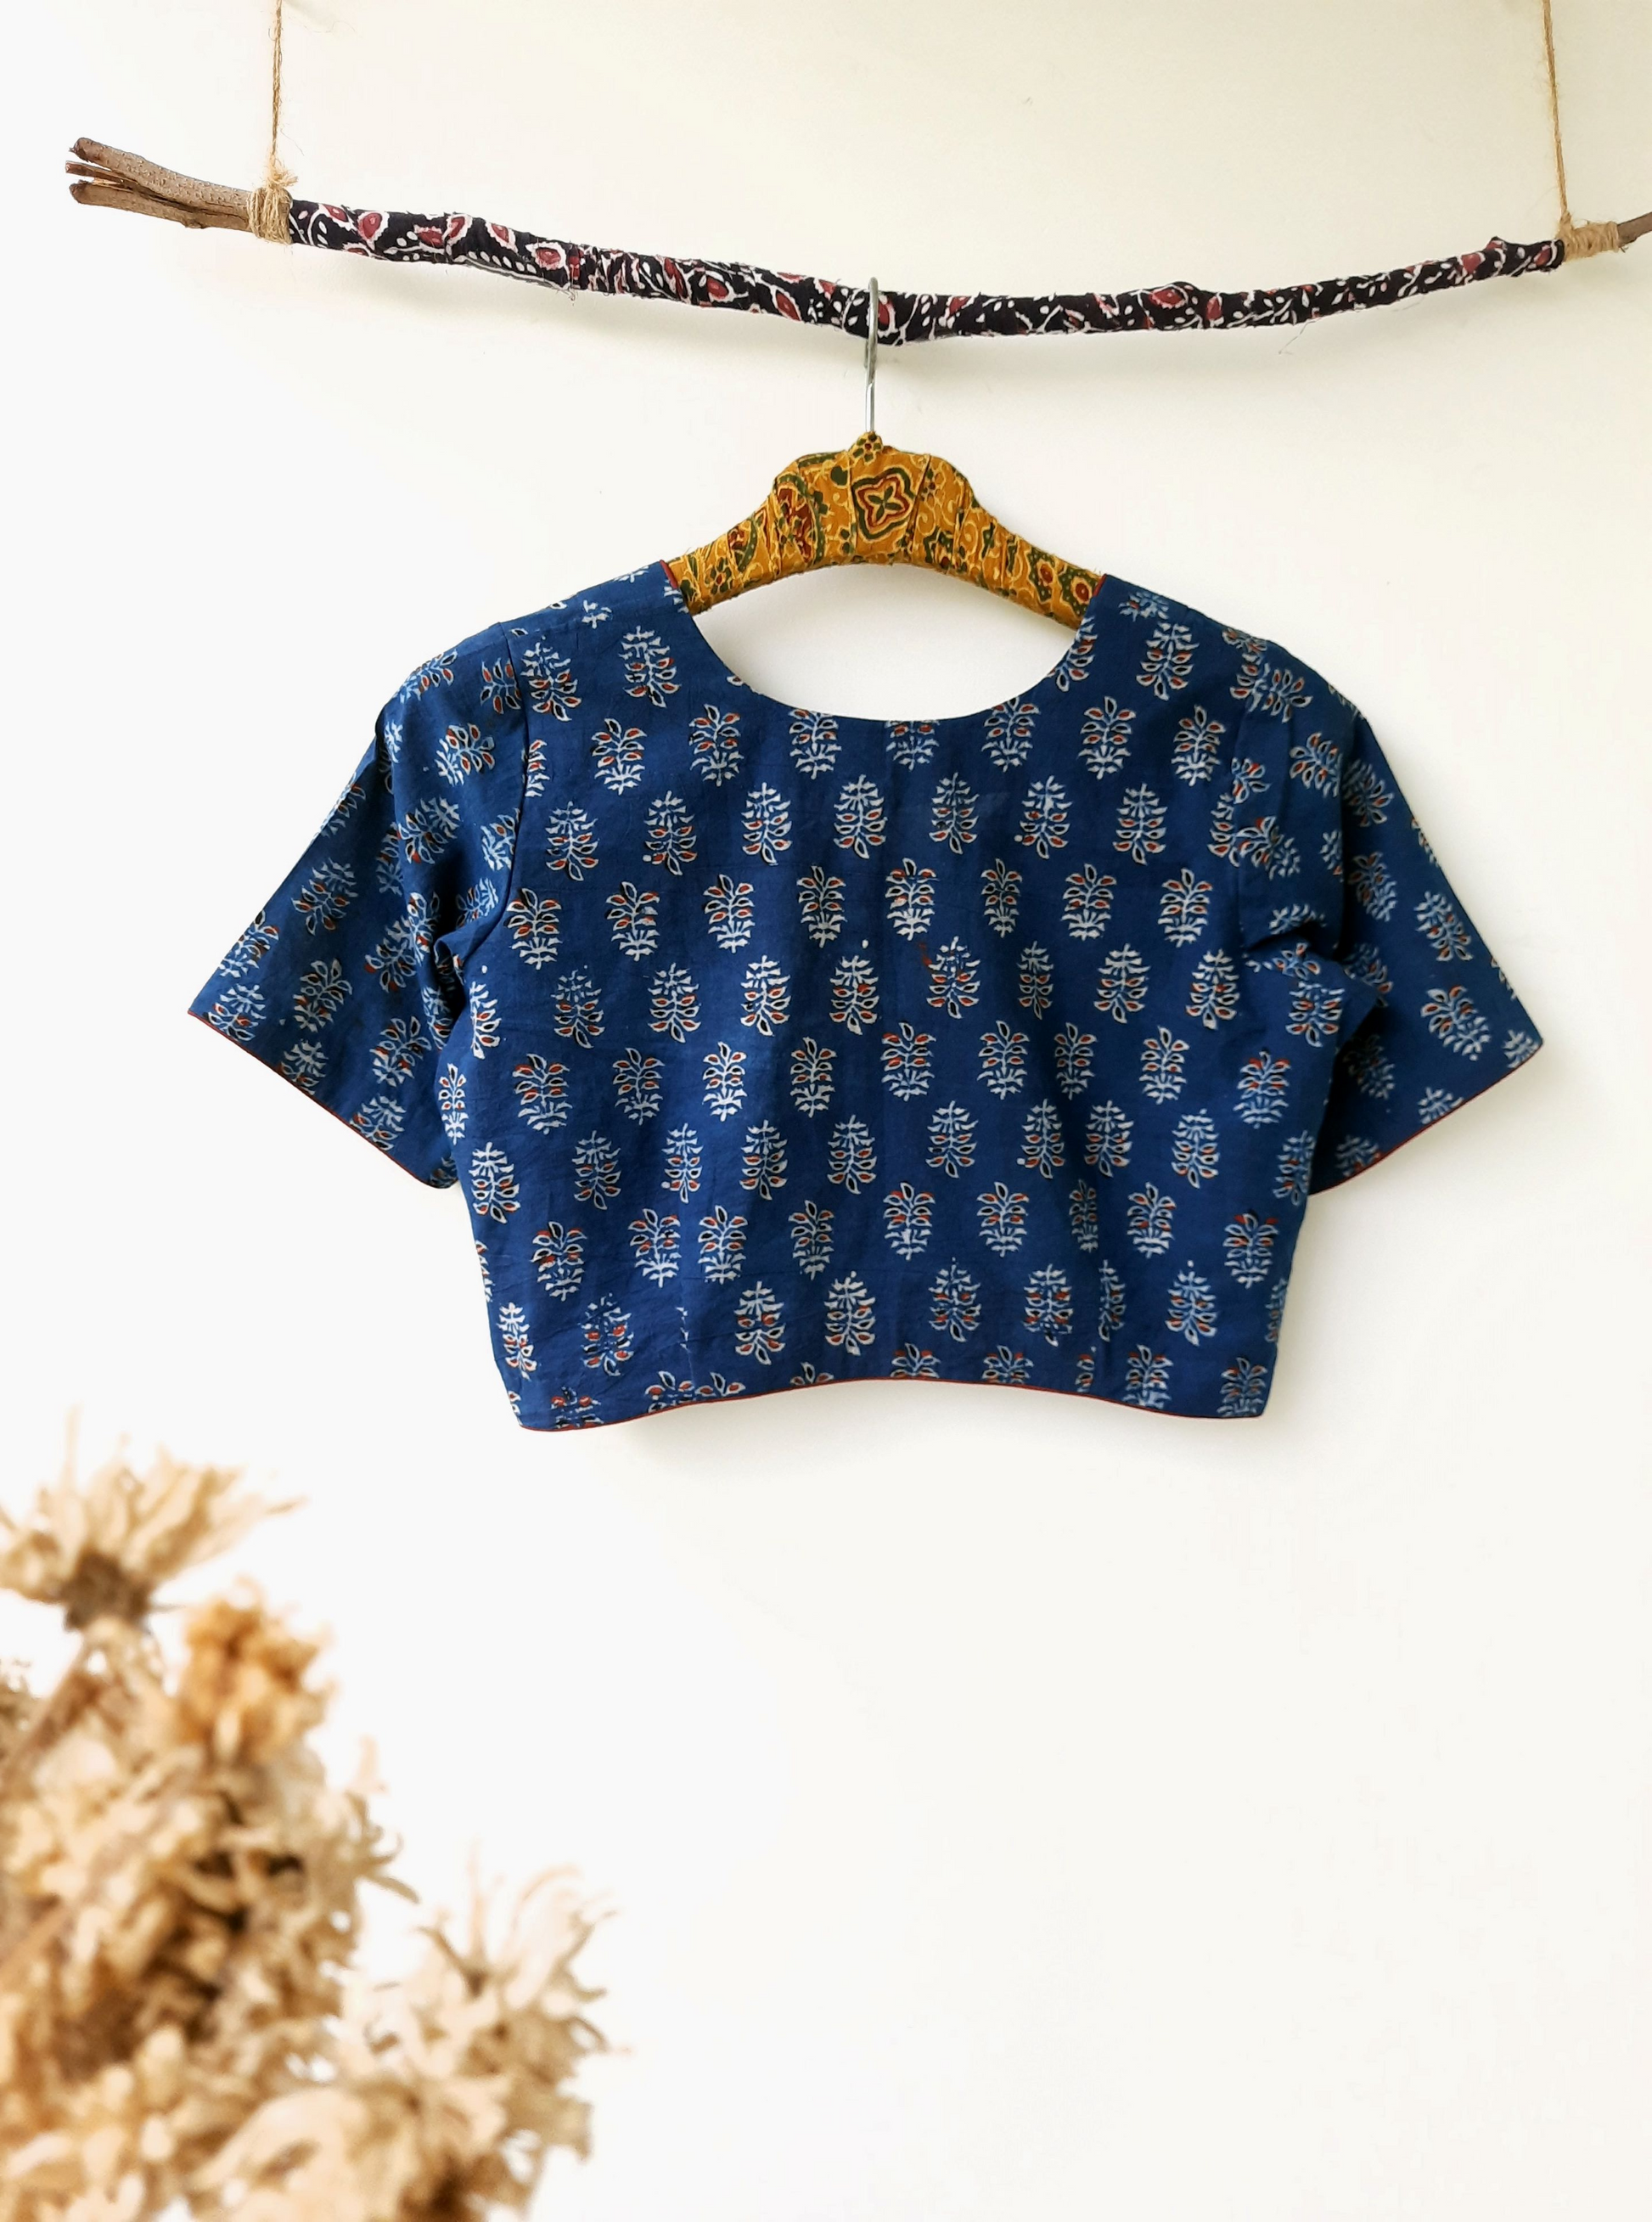 Indigo dyed ajrakh cotton blouse, Indiggo ajrakh prints saree blouse, Indigo ajrakh blouse